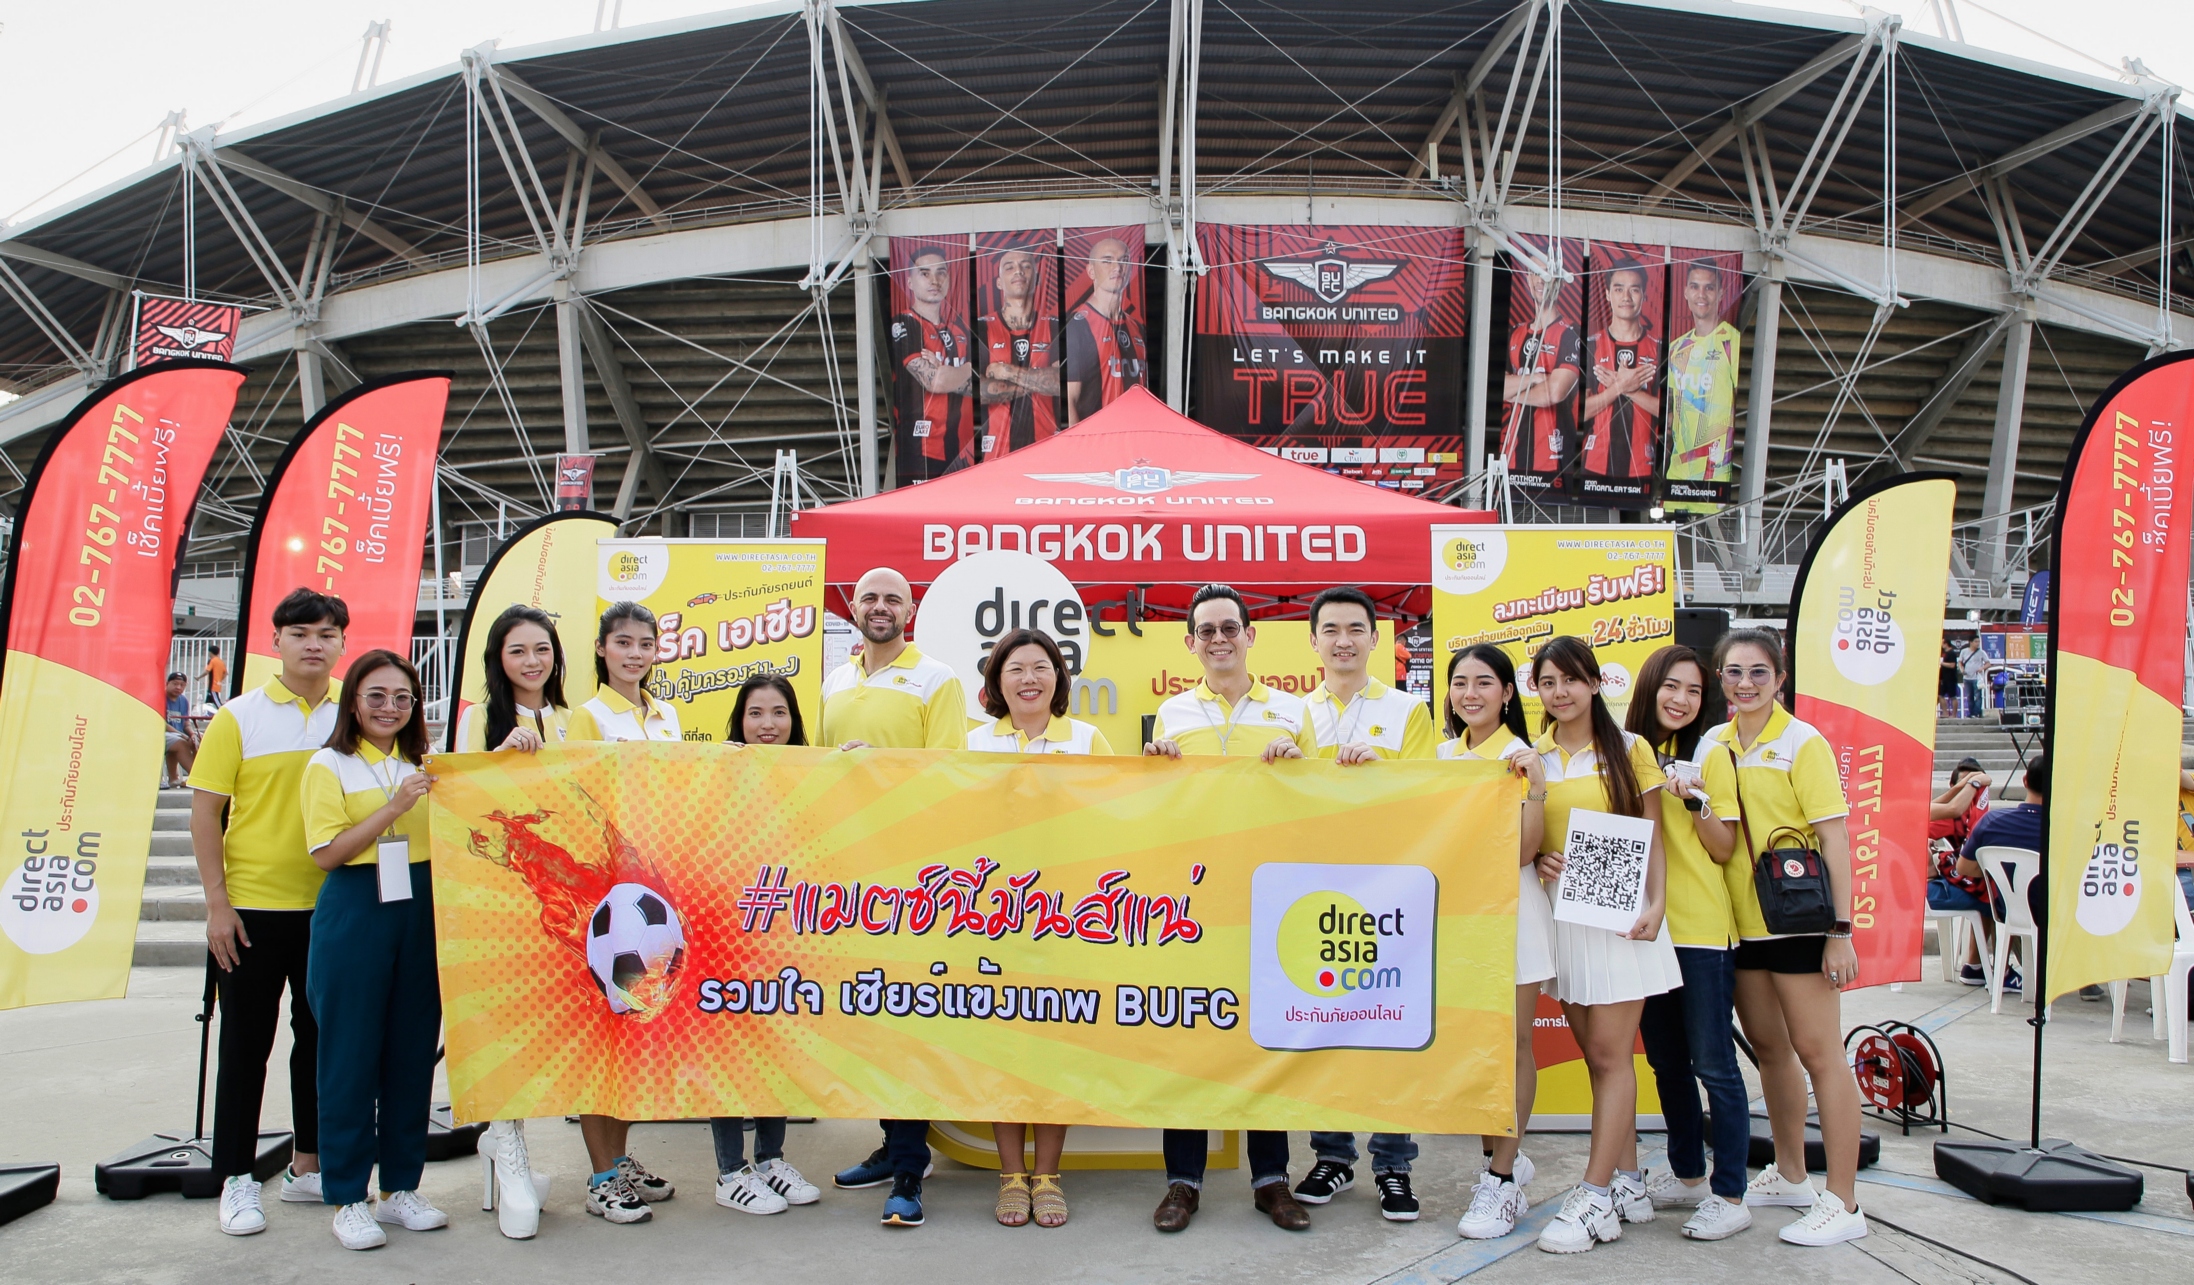 ครั้งแรกในไทย! ไดเร็ค เอเชีย แจกก่อนไม่รอซื้อ กับ บริการช่วยเหลือฉุกเฉินบนท้องถนน (Roadside Assistance) ที่มาเปิดตัวในงานฟุตบอลไทยลีก 2020 หวังให้คนไทยอุ่นใจแม้ในวันวิกฤต